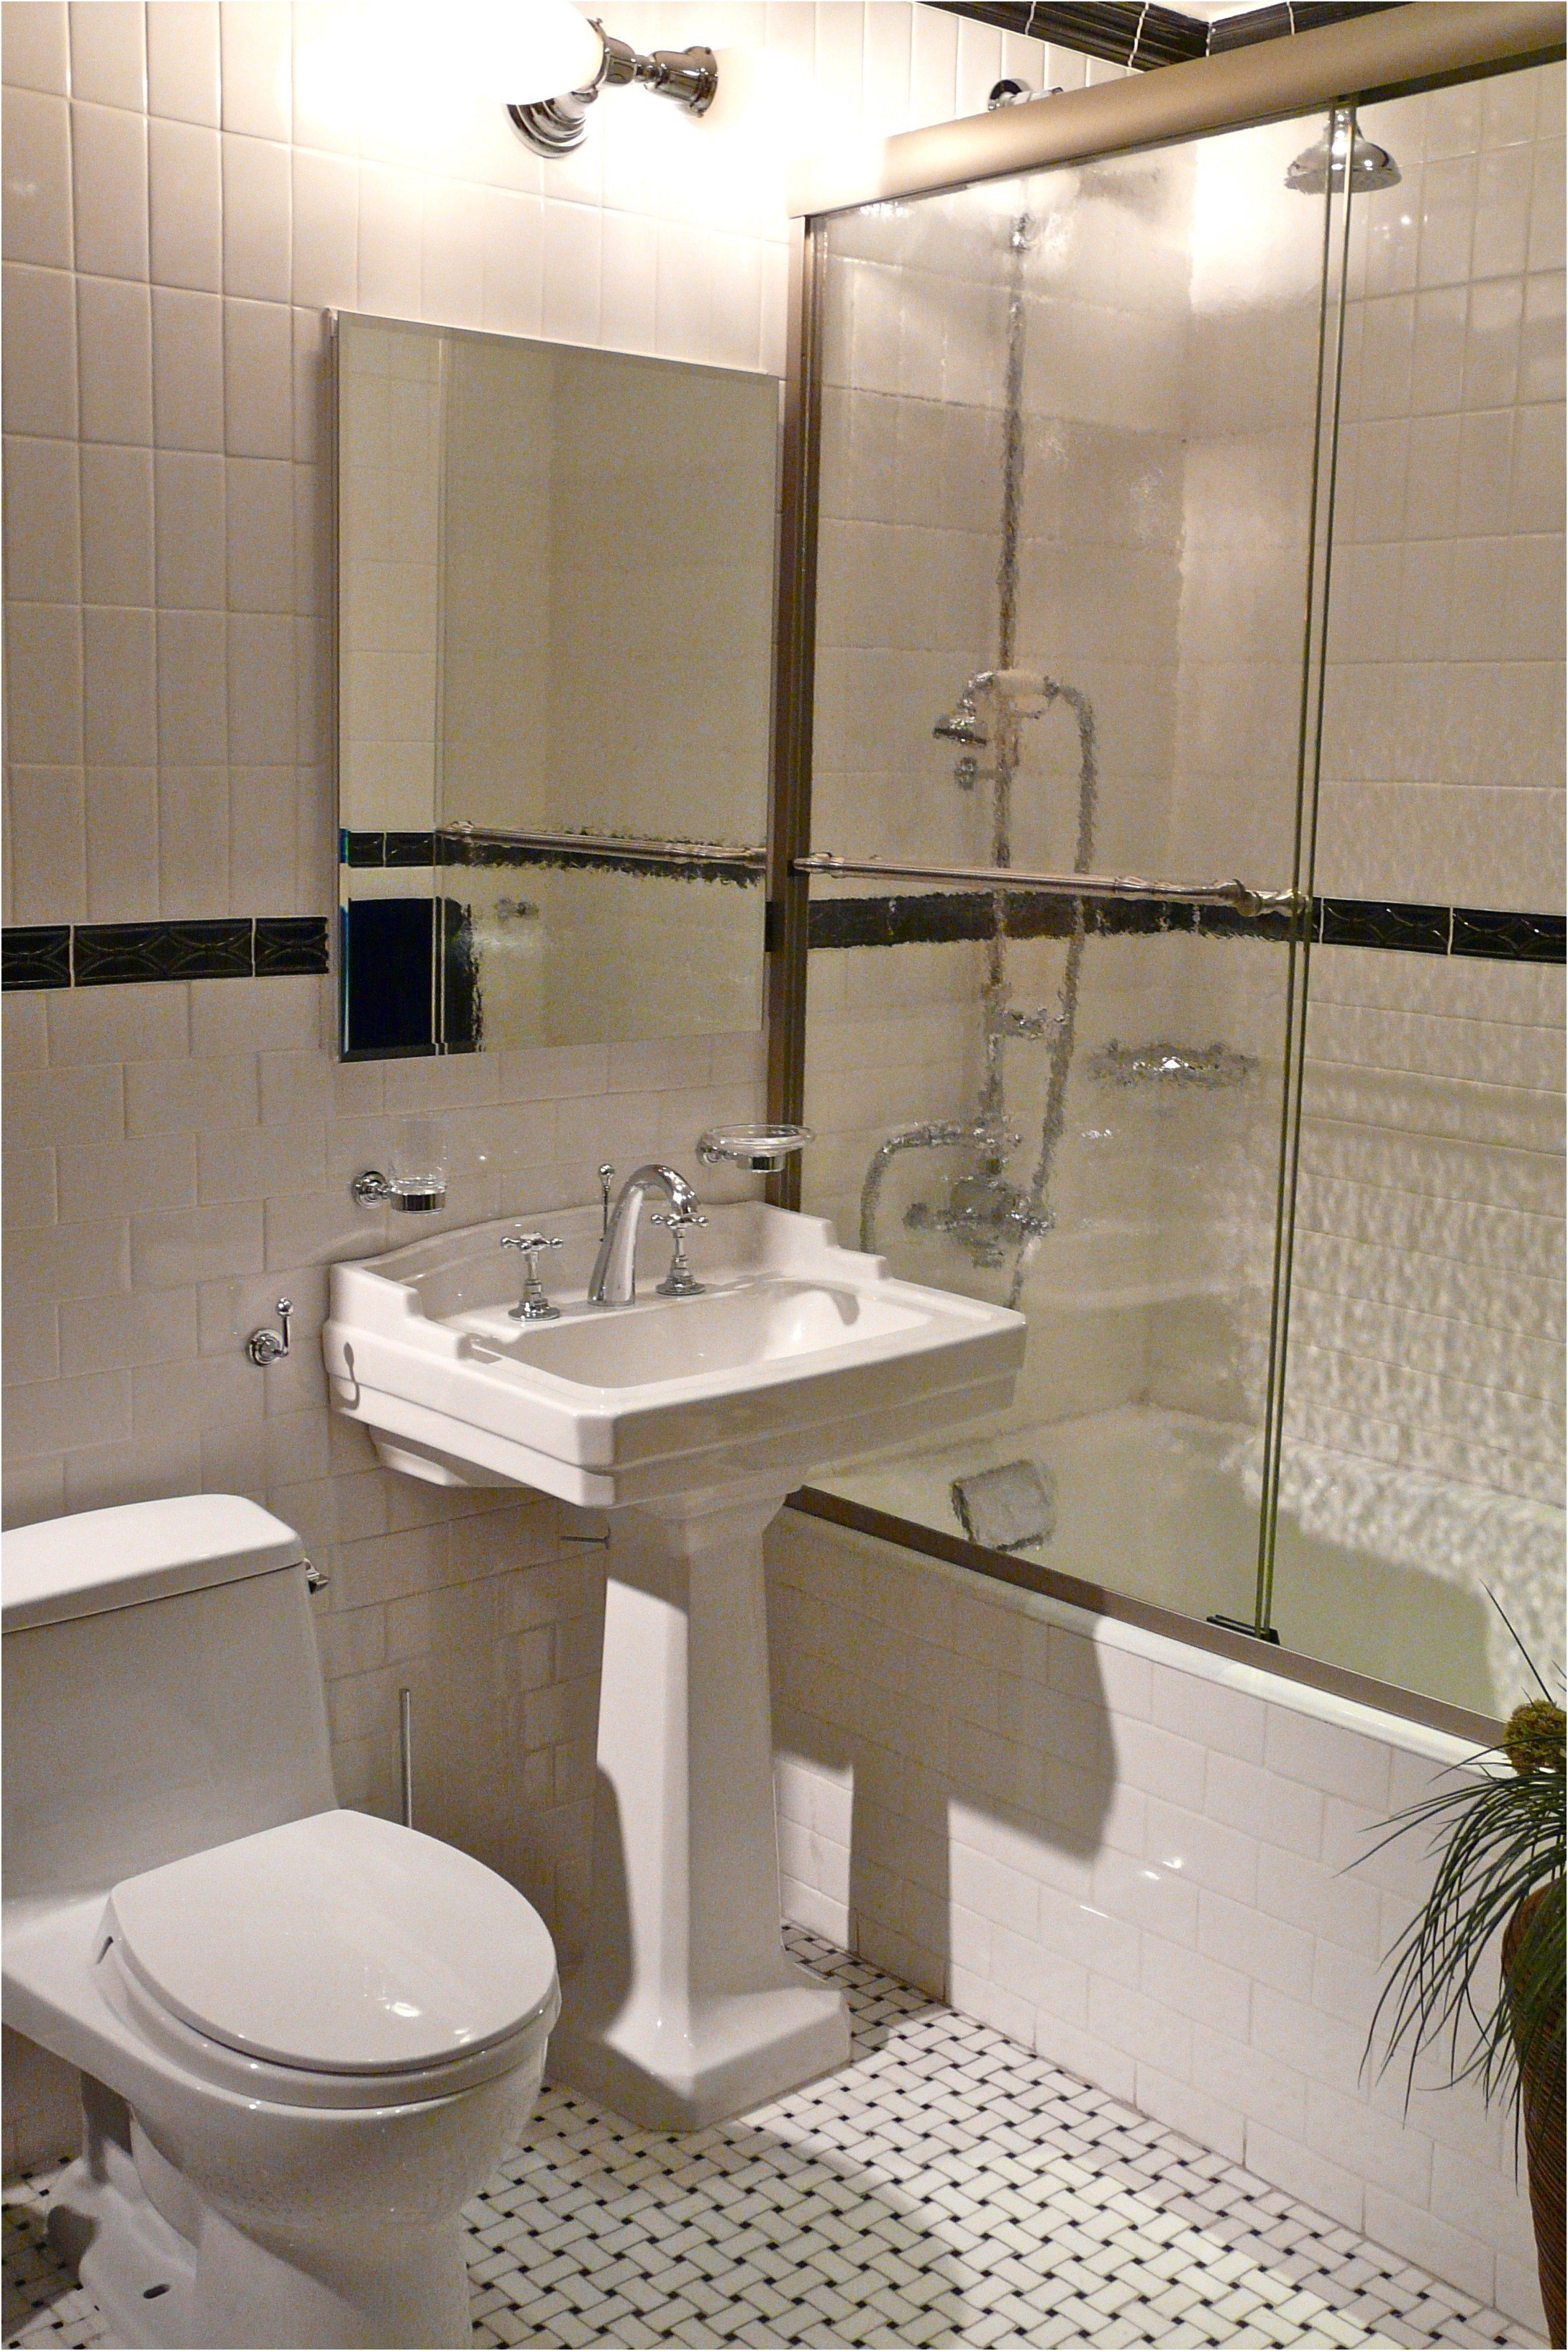 Маленькая ванная комната хрущевки. Ванная комната вхрющевке. Ванная комната Хрущева. Ванные комнаты в хрущевке. Ванная комнатахрушевка.